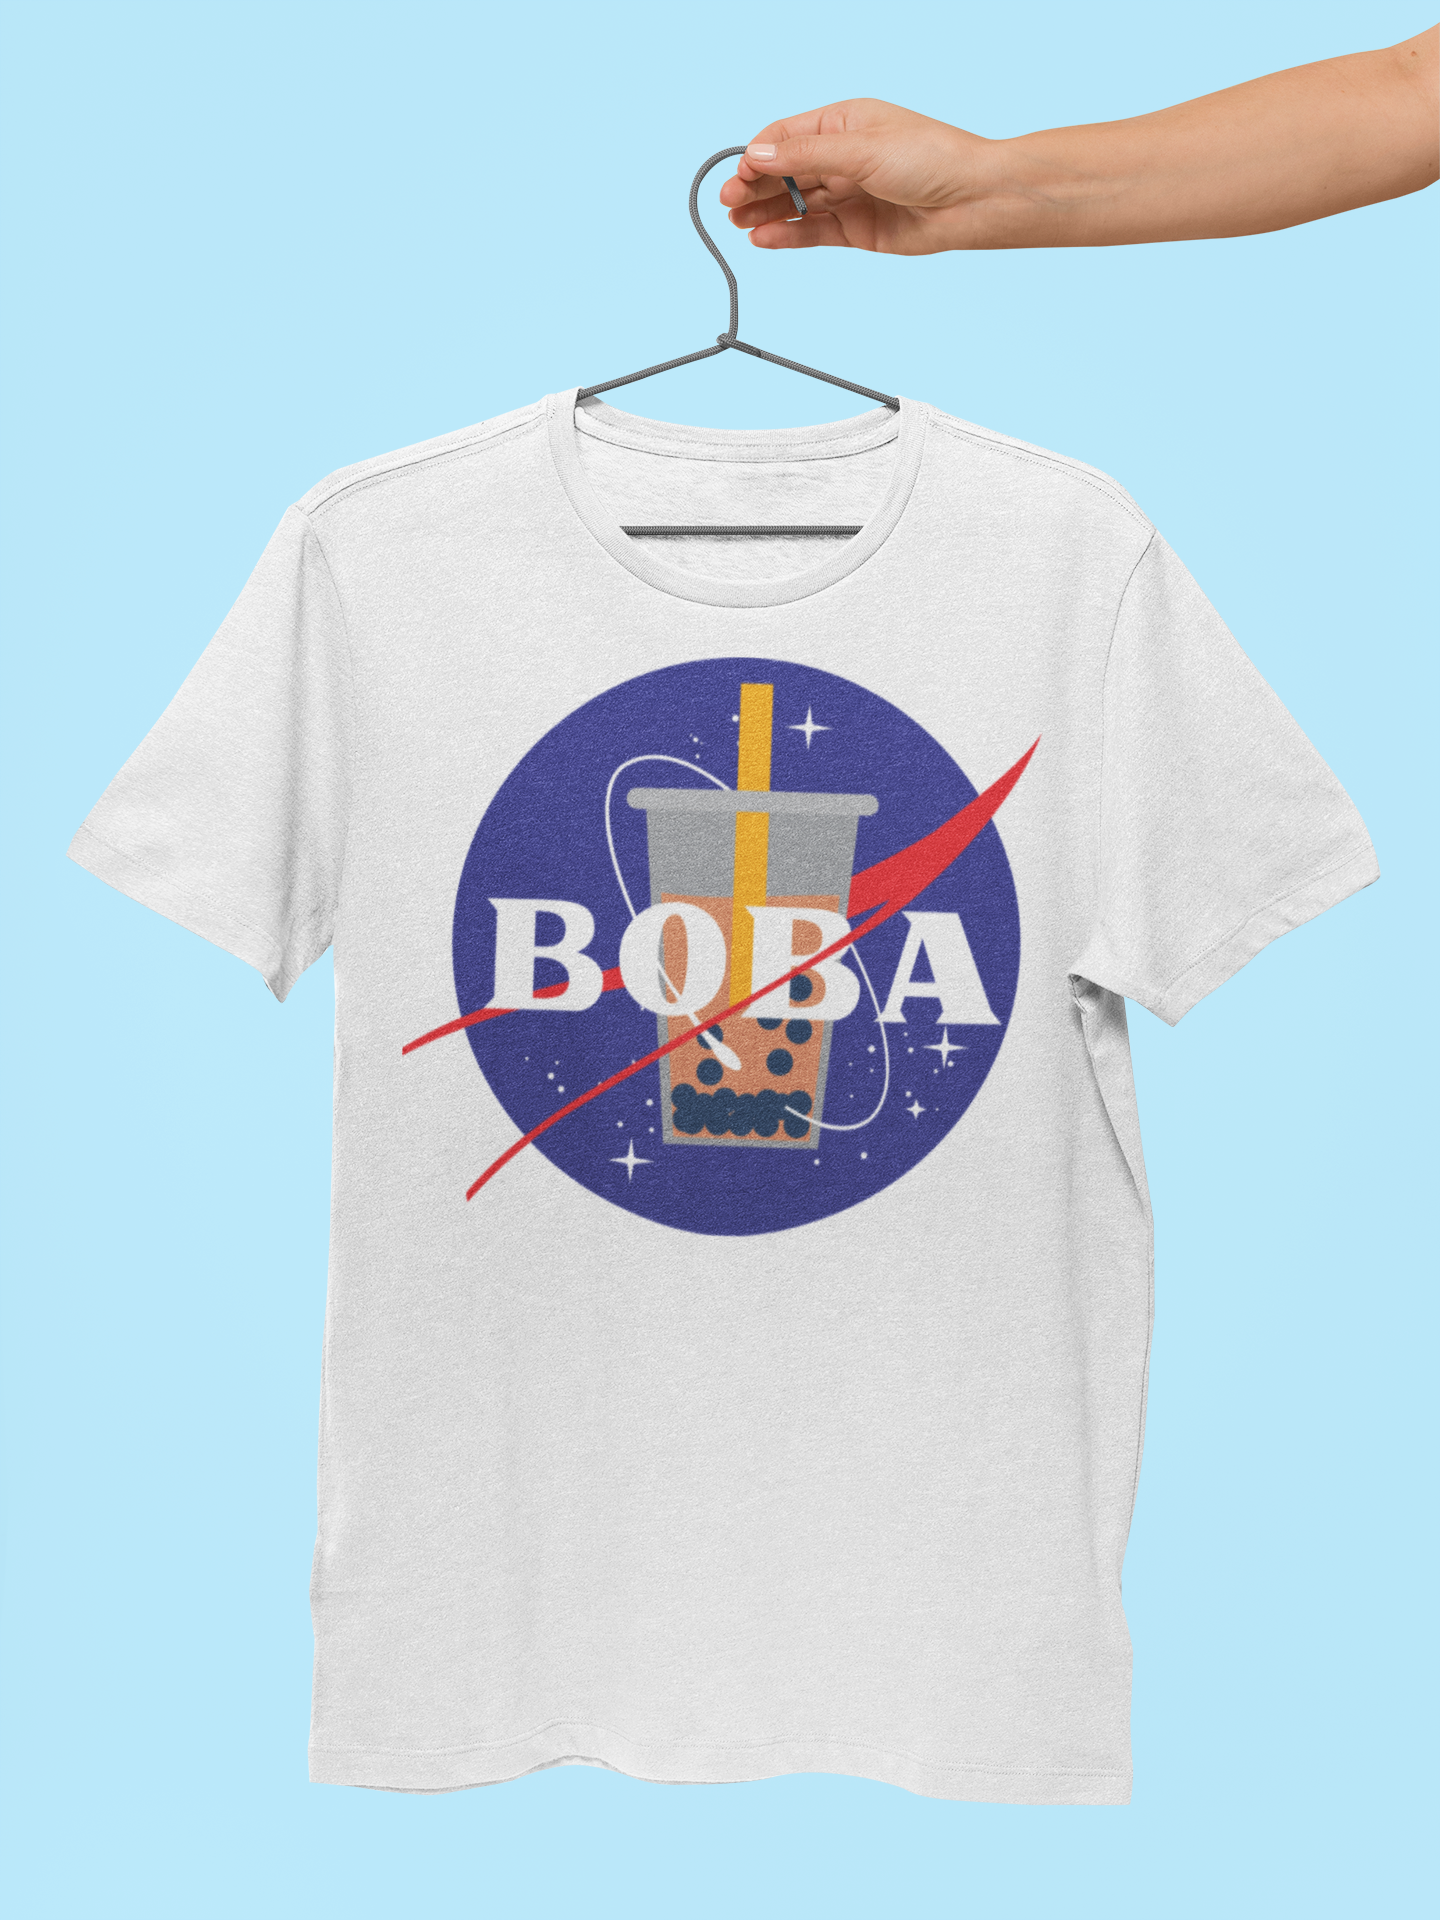 Mockup of a Nasa Boba shirt 